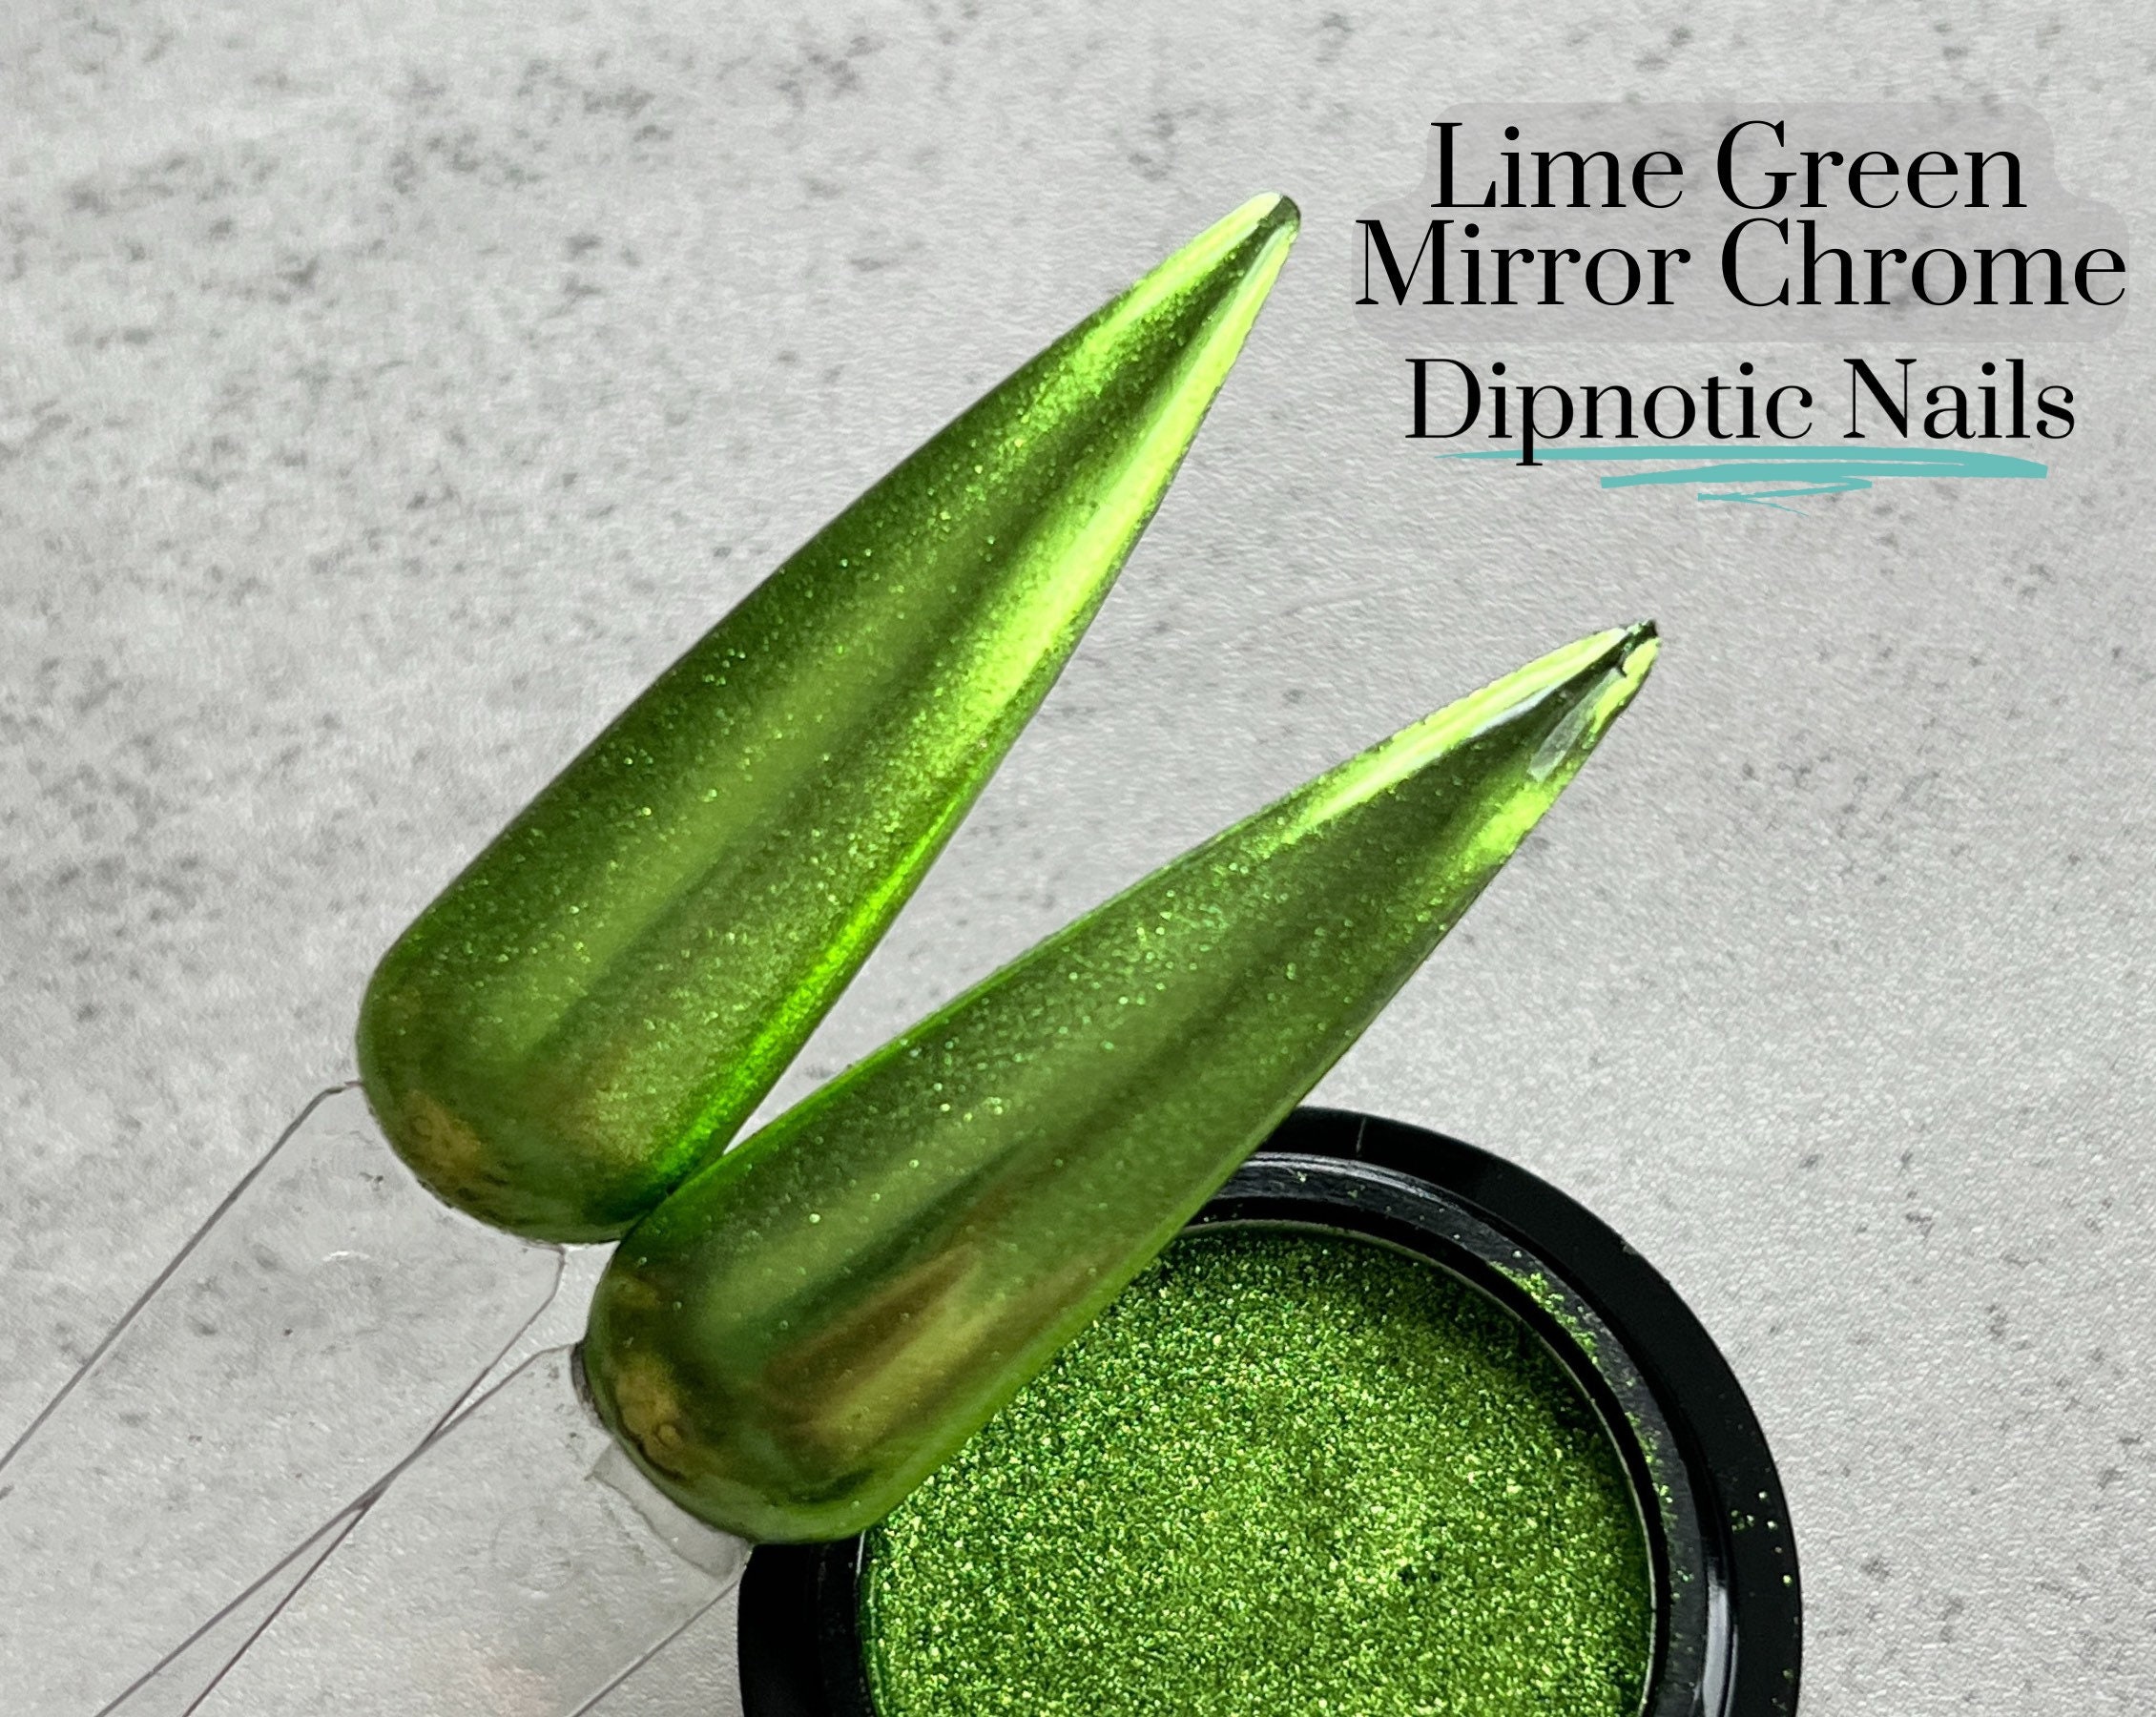 Lively Lime green .015 iridescent glitter, tumbler making glitter